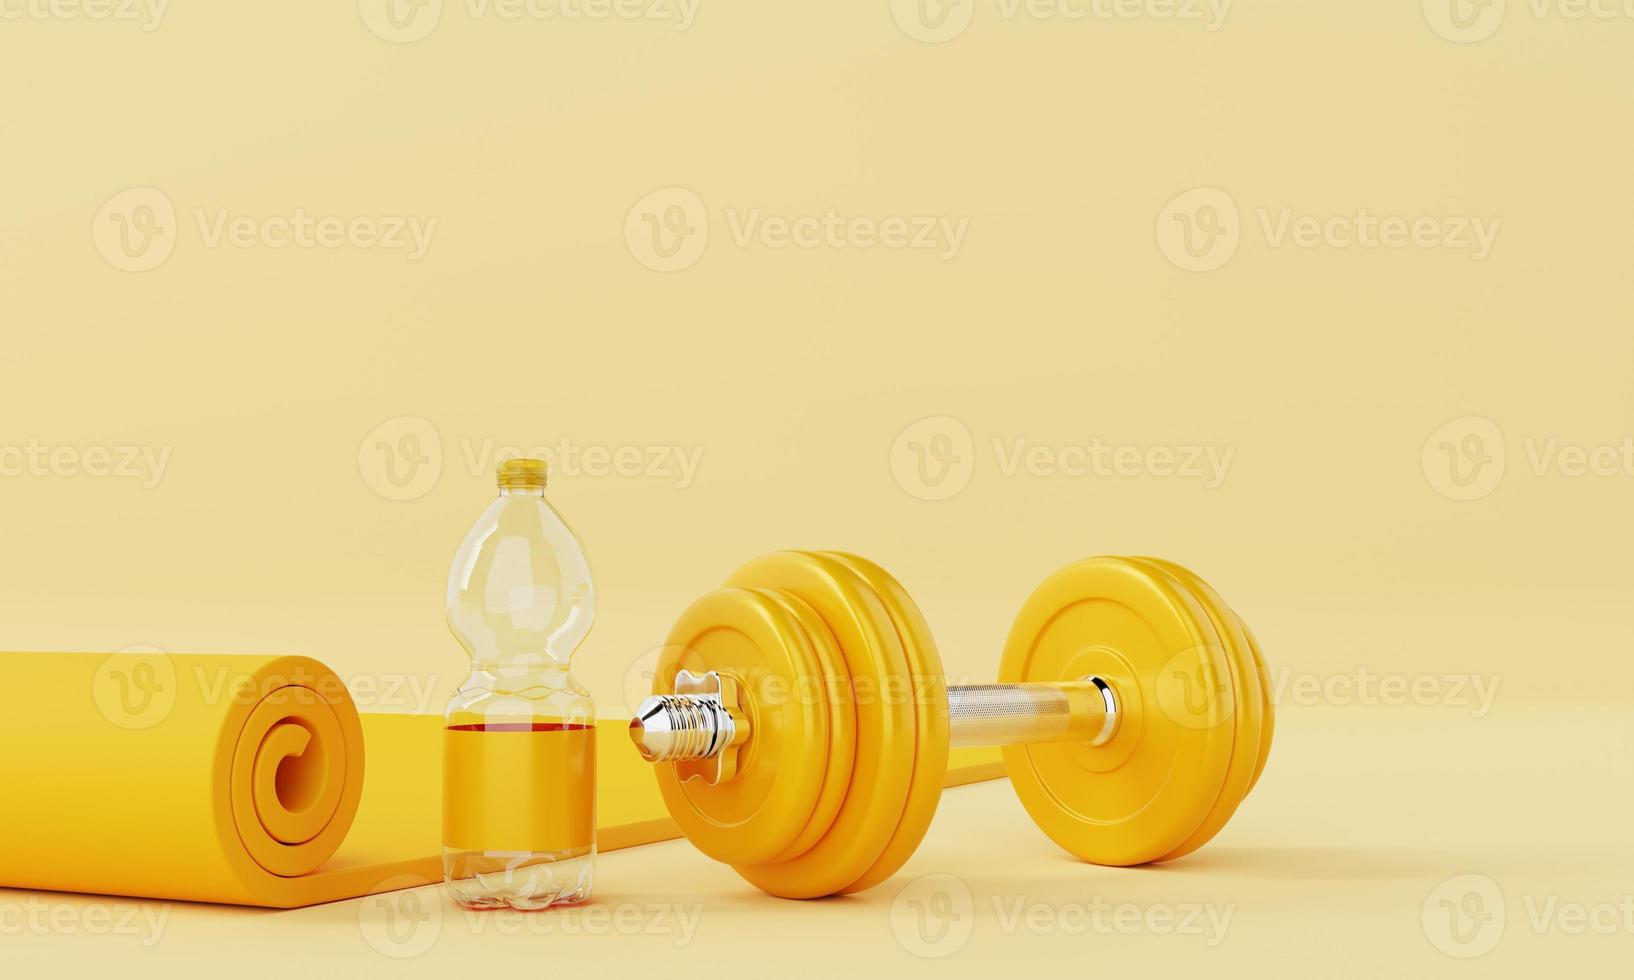 deporte fitness con esterilla de yoga botella de agua potable y mancuernas sobre fondo amarillo pastel. concepto de fitness y deporte. monocolor. Representación de la ilustración 3d foto